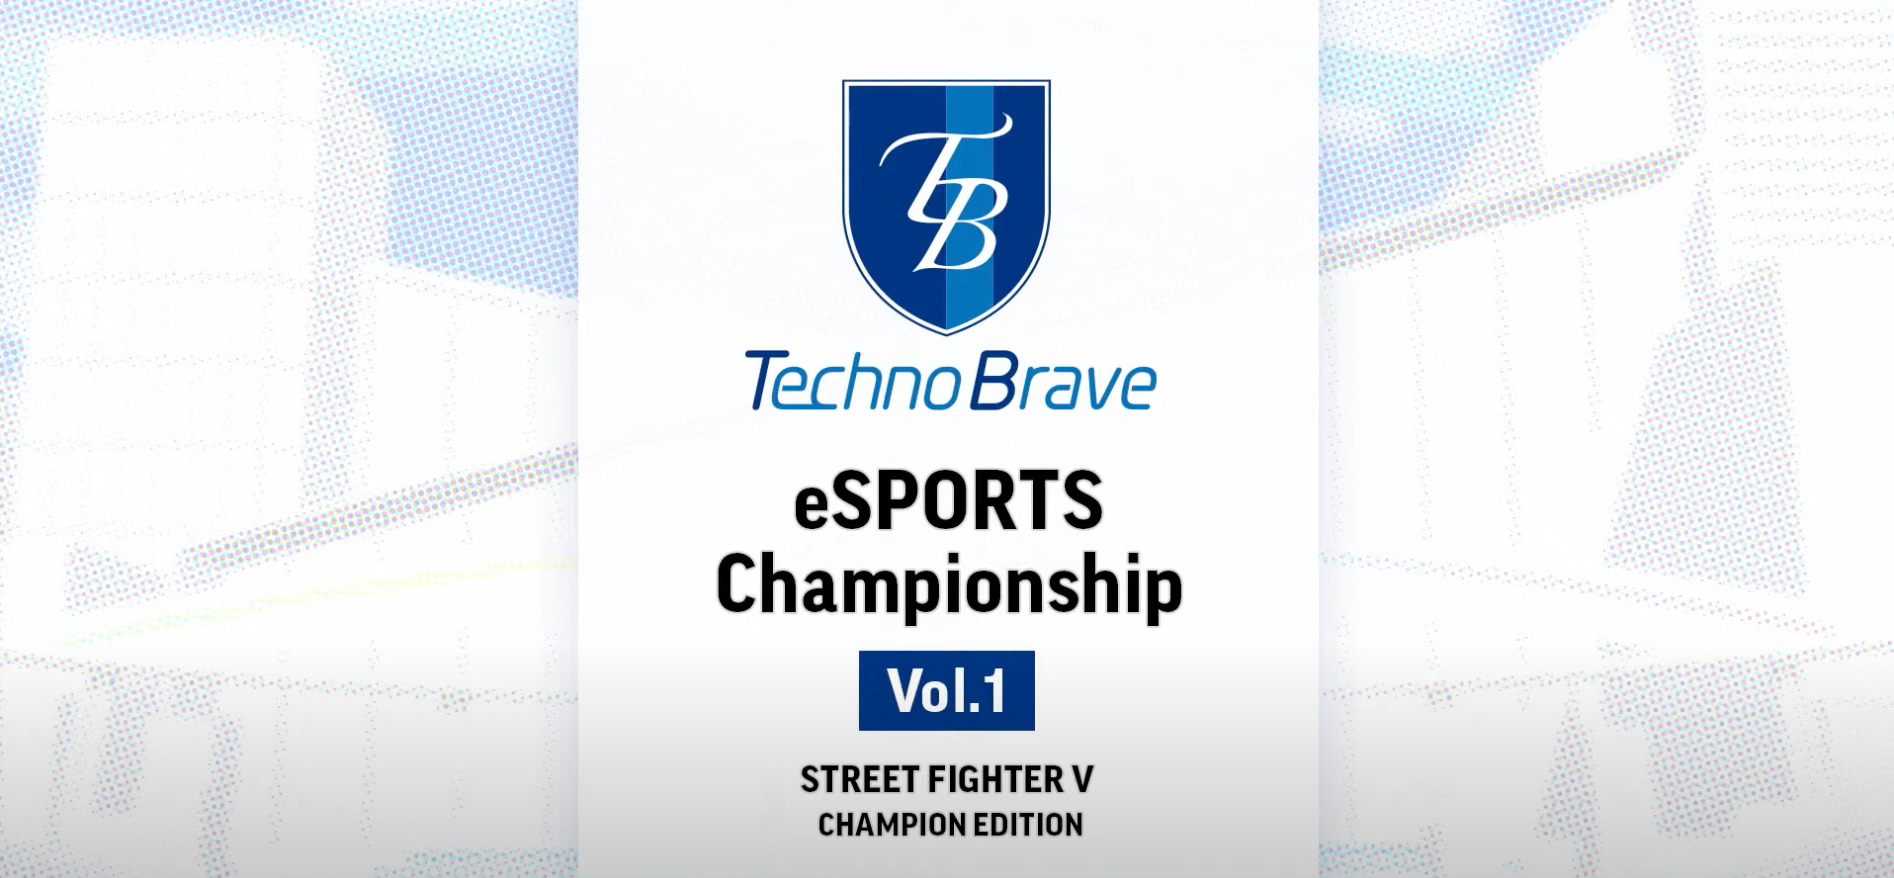 TechnoBrave eSPORTS Championship Vol.1 が開催されました